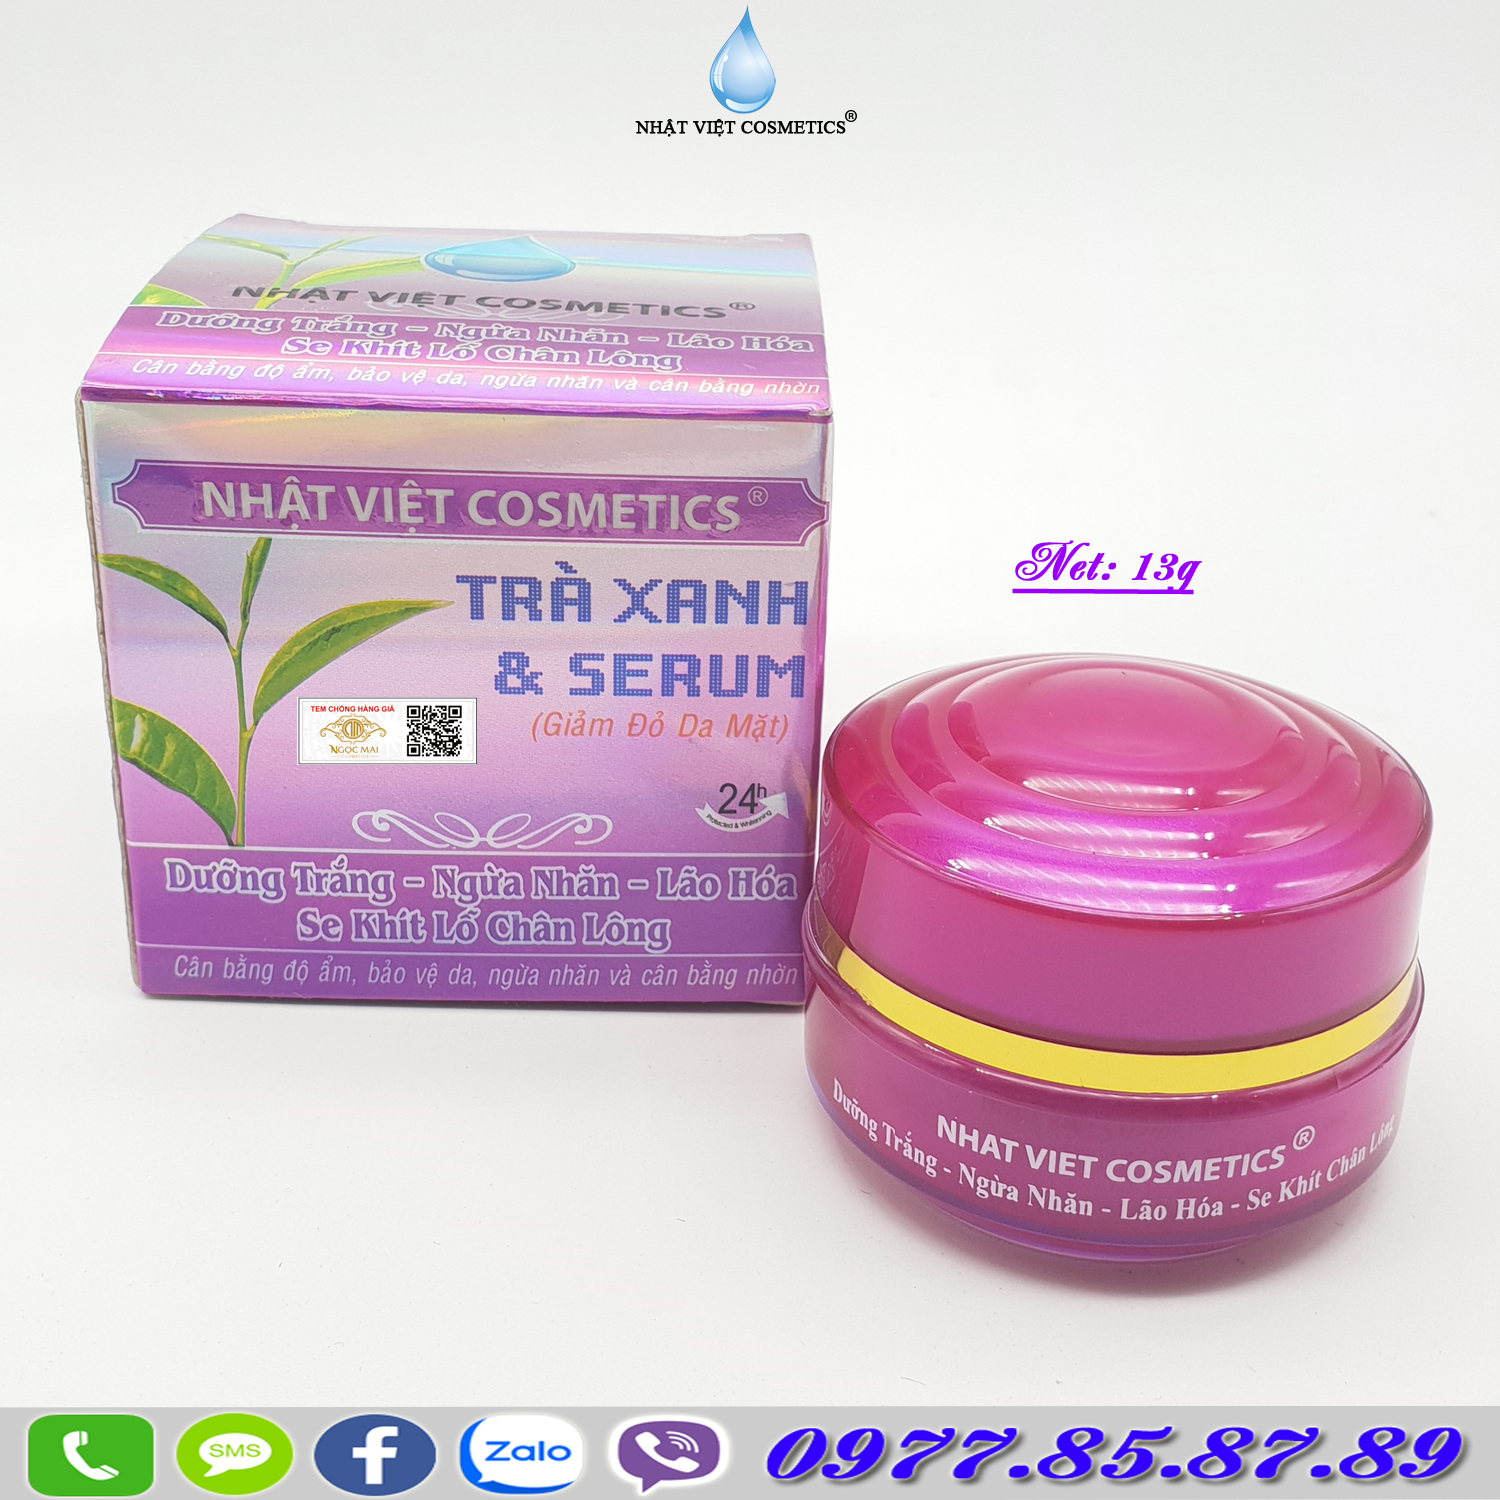 Kem dưỡng trắng - Ngừa nhăn - Ngăn lão hóa - Se khít lỗ chân lông Nhật Việt Cosmetics (13g)